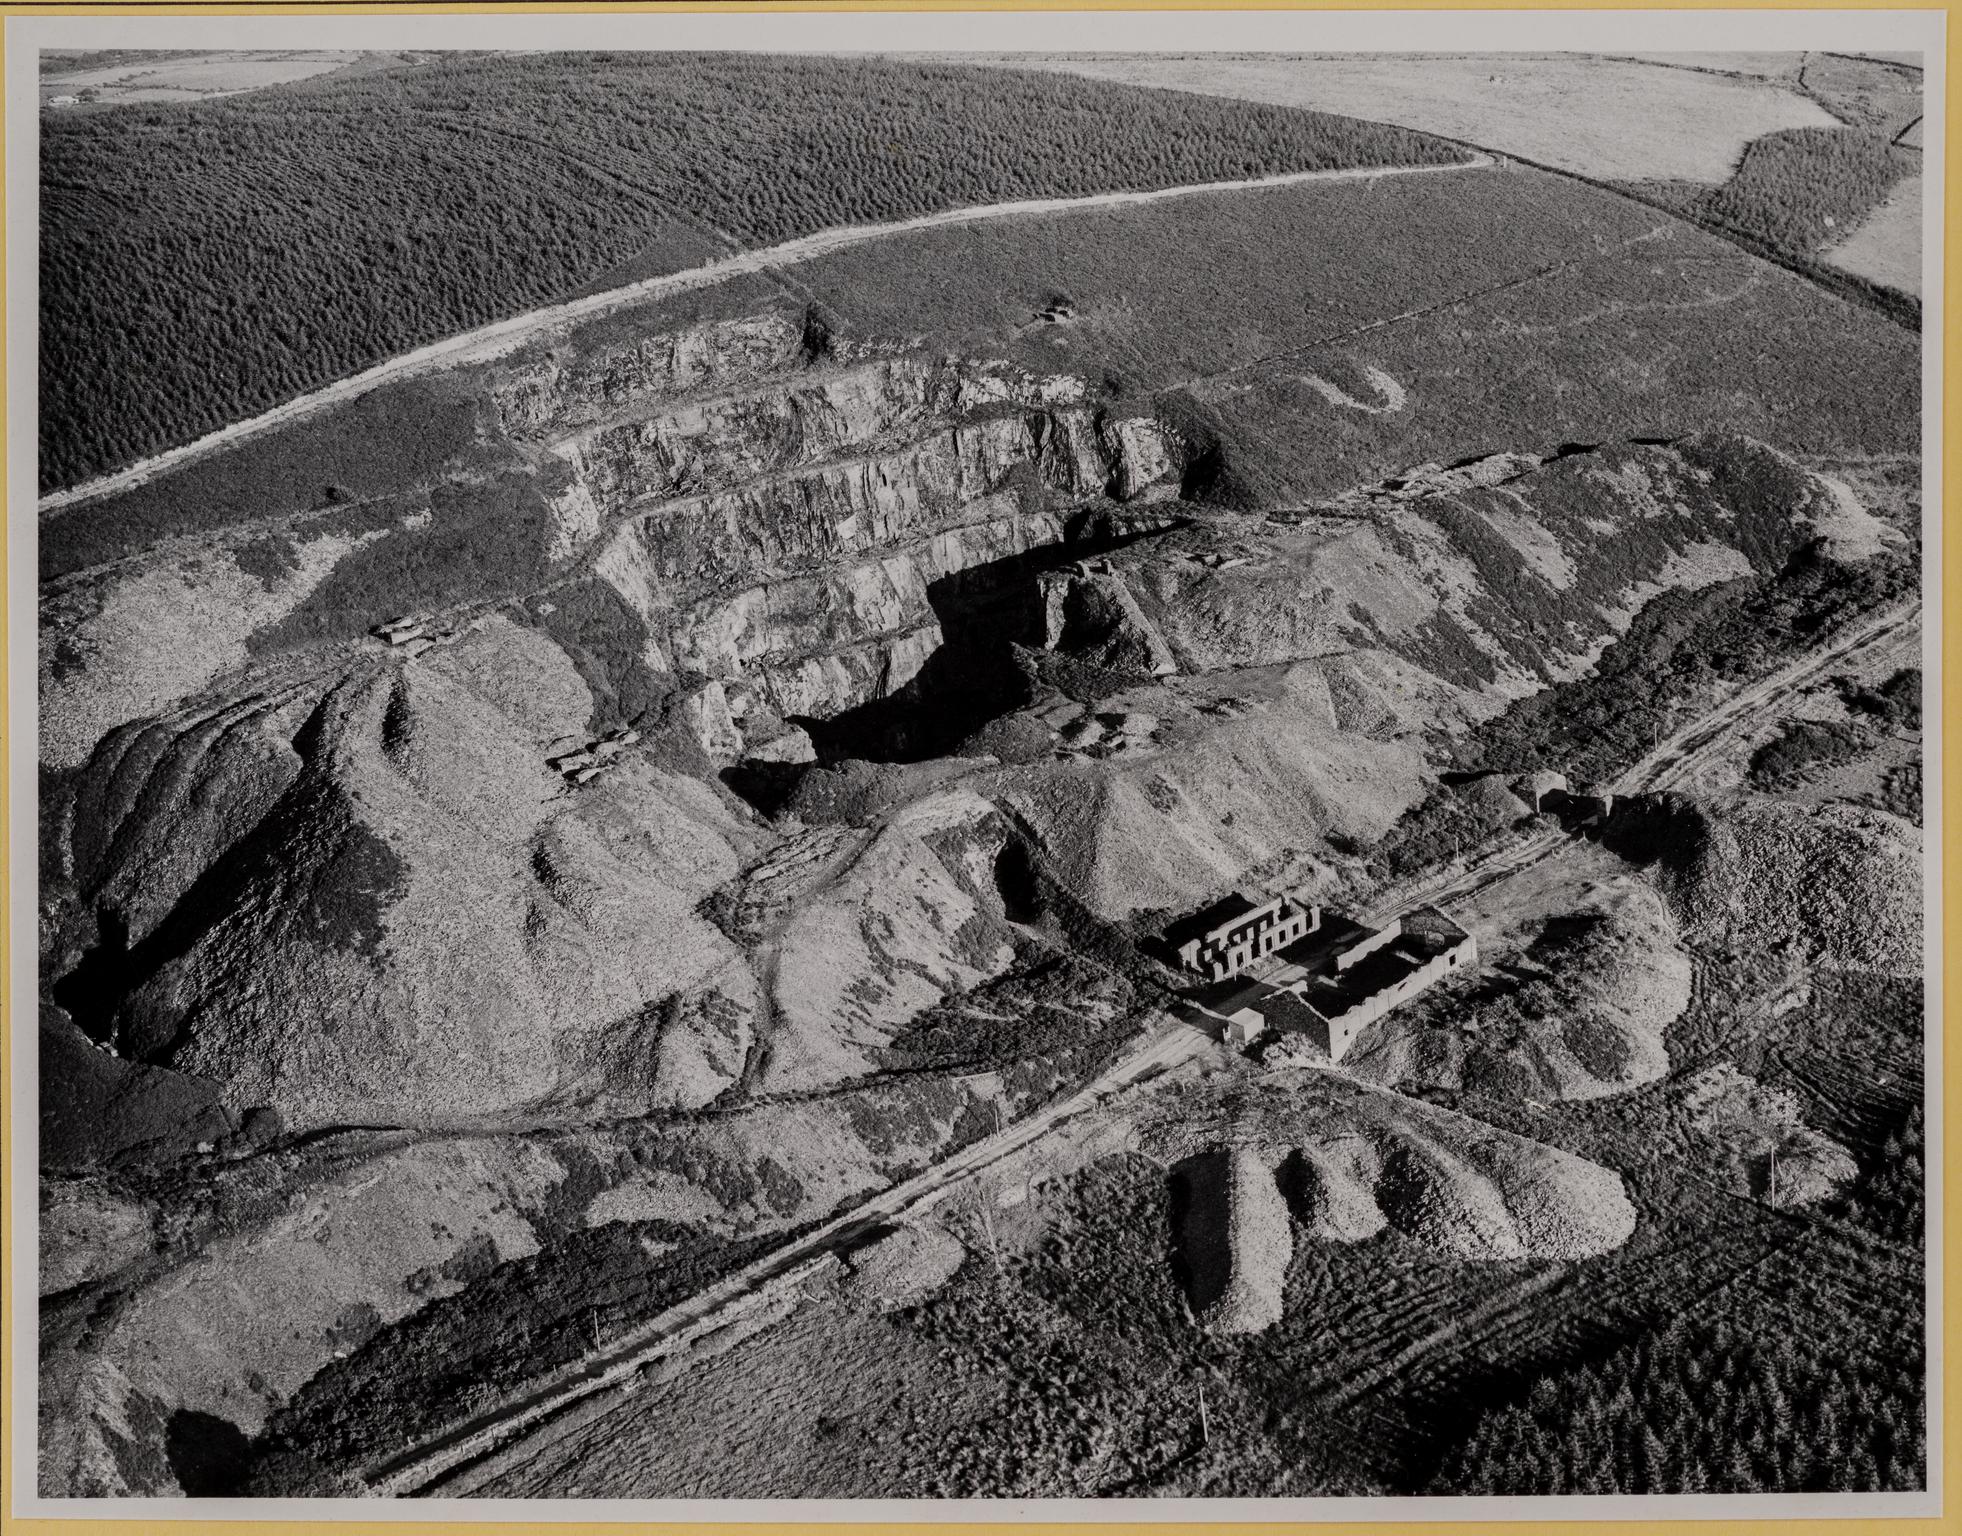 Rosebush slate quarry, photograph